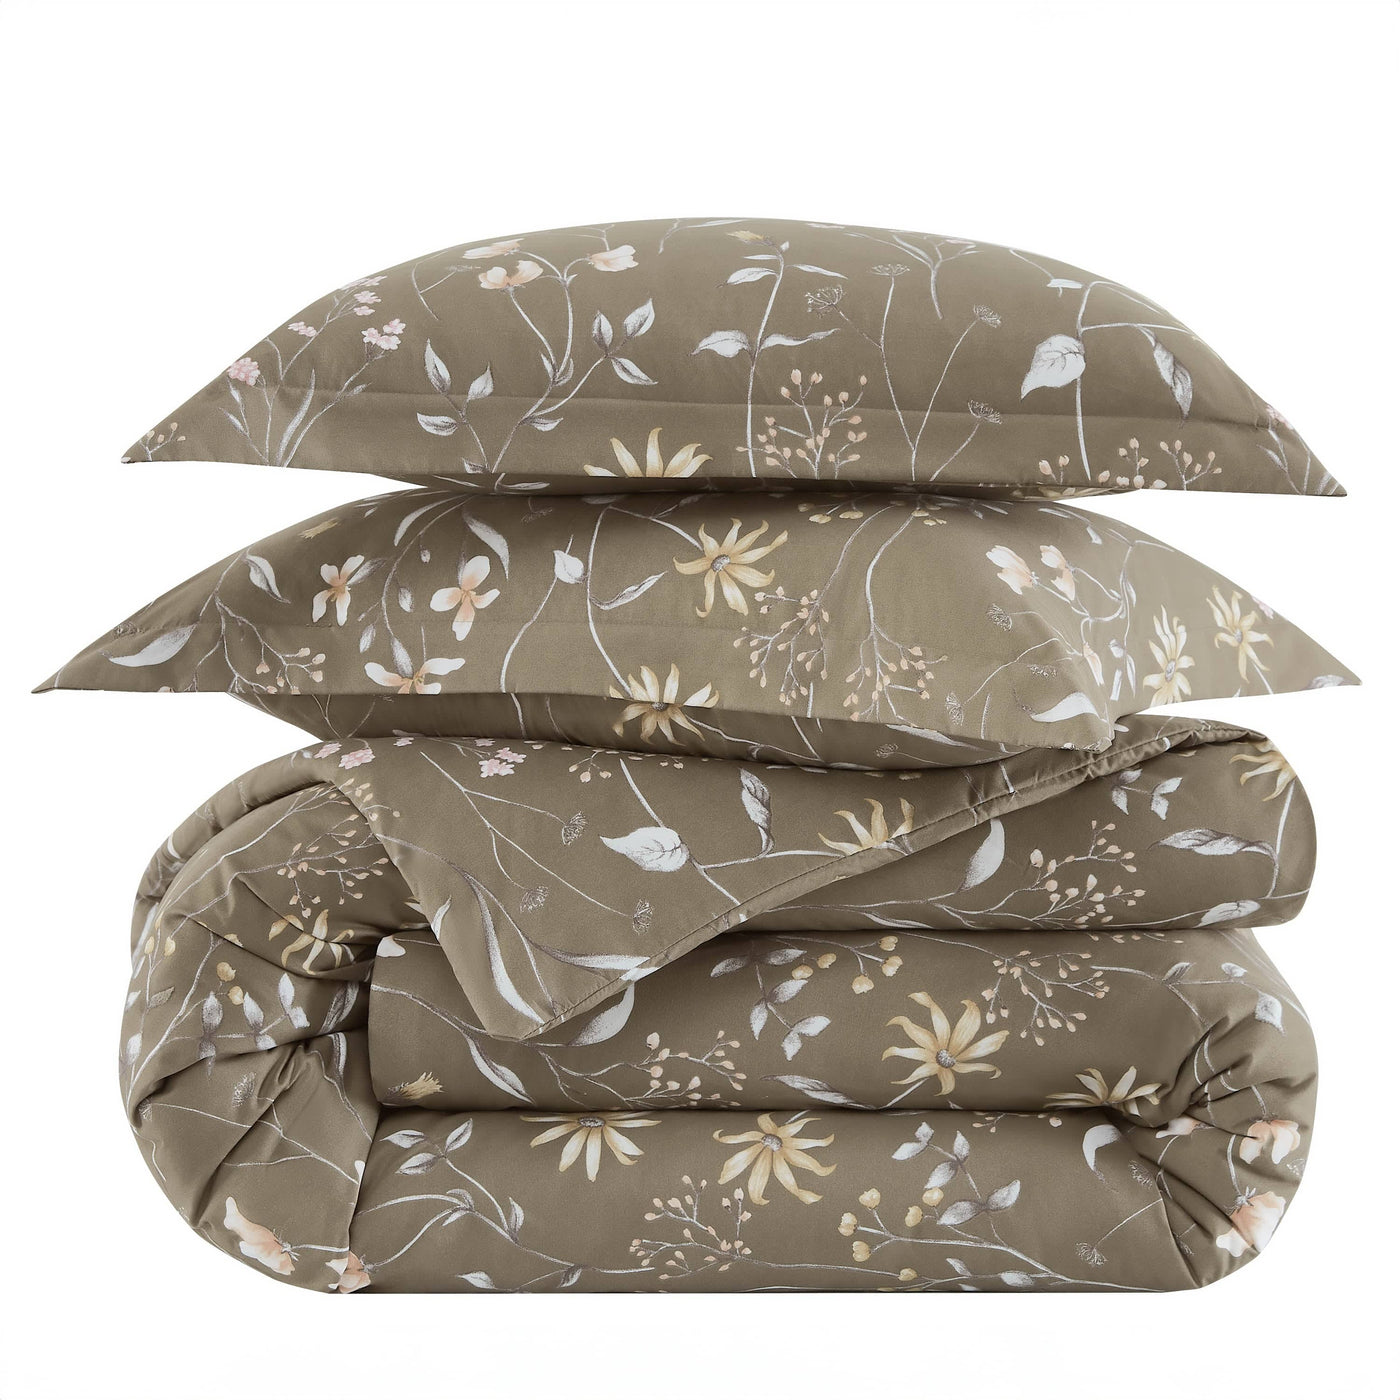 Stack Image of Secret Meadow Comforter Set in olive-brown#color_secret-meadow-olive-brown